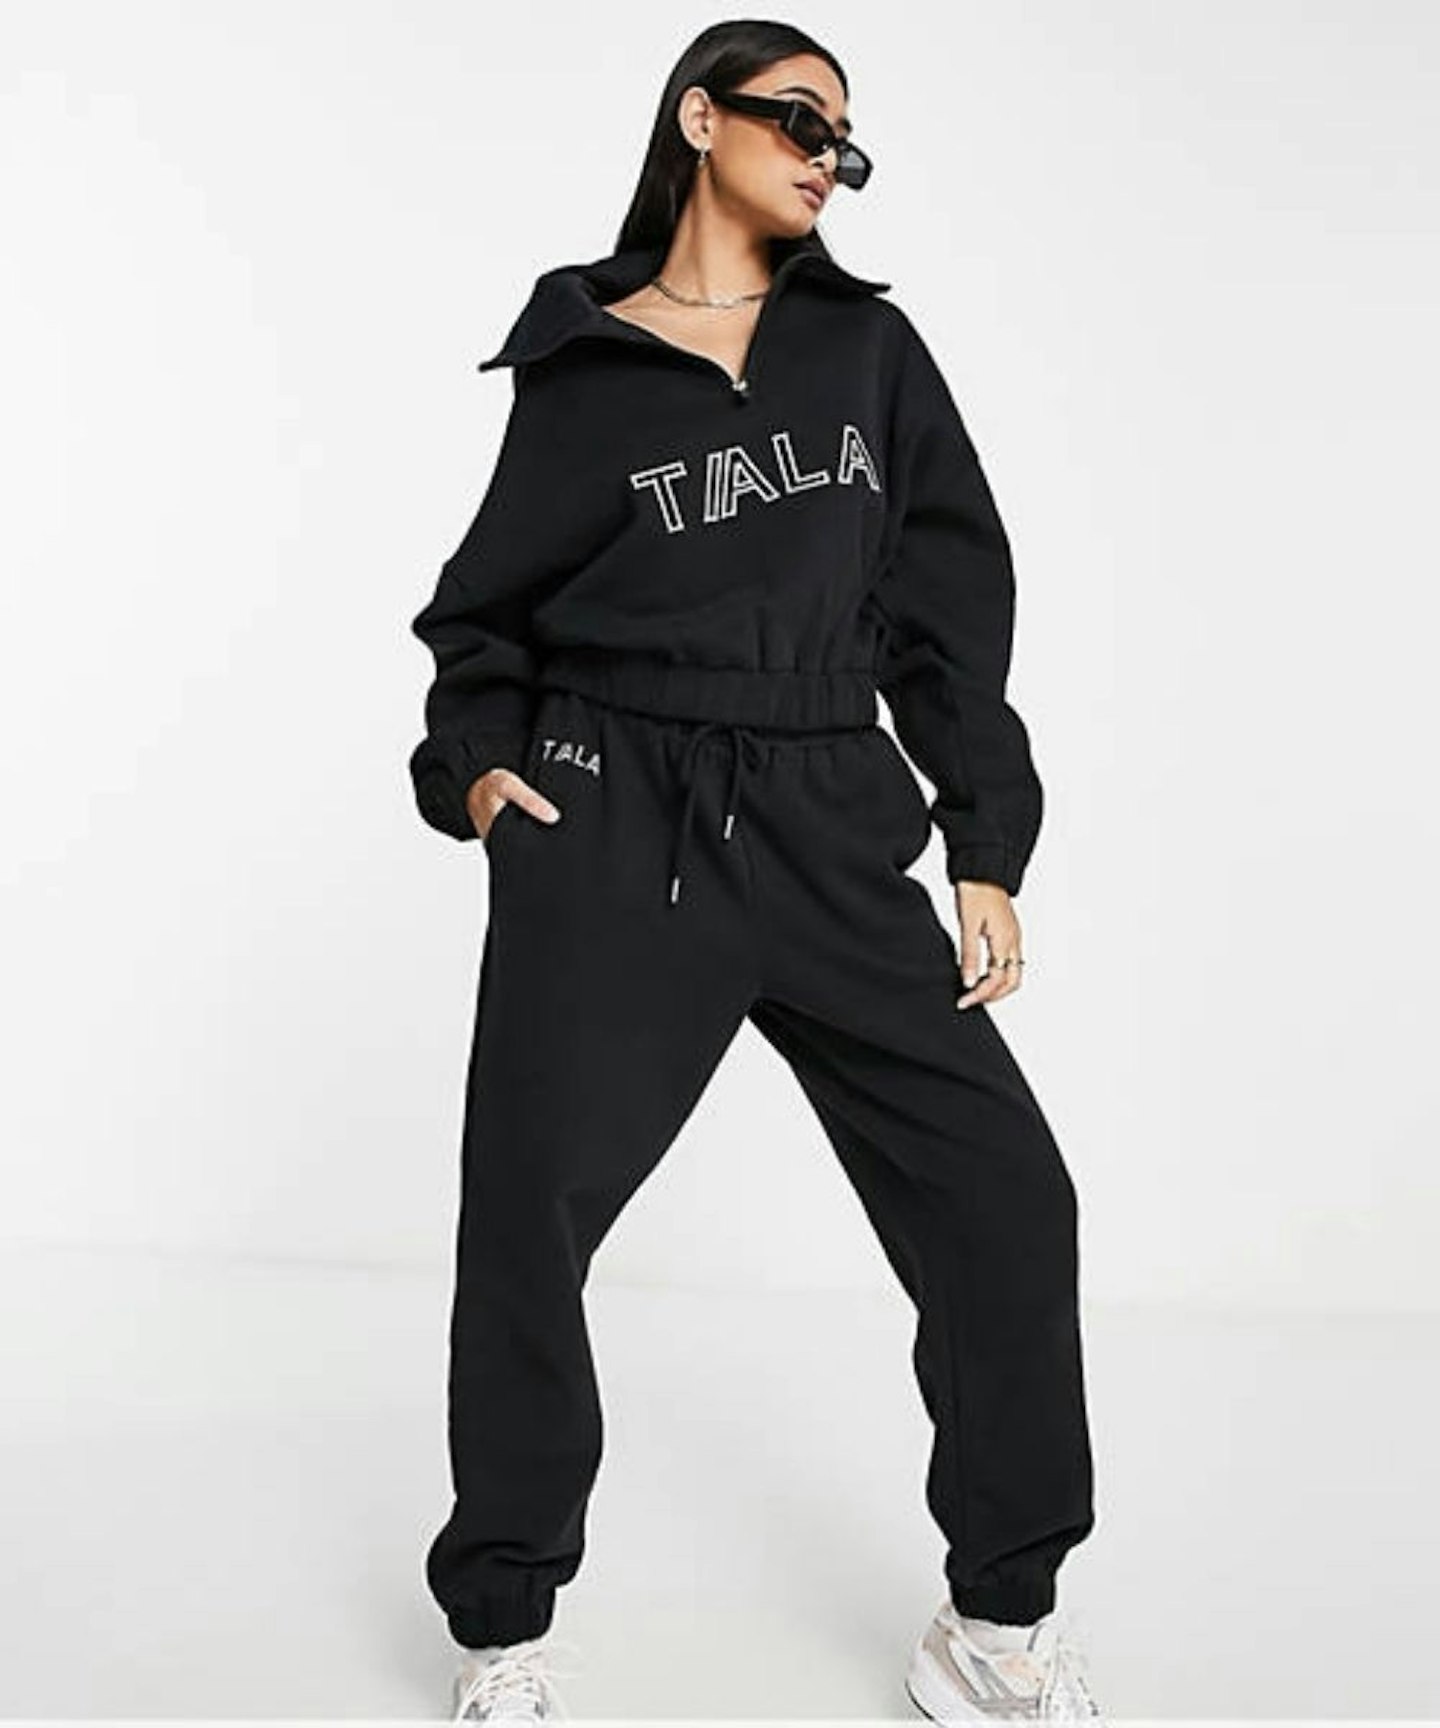 TALA Doze half zip sweatshirt in black exclusive to ASOS